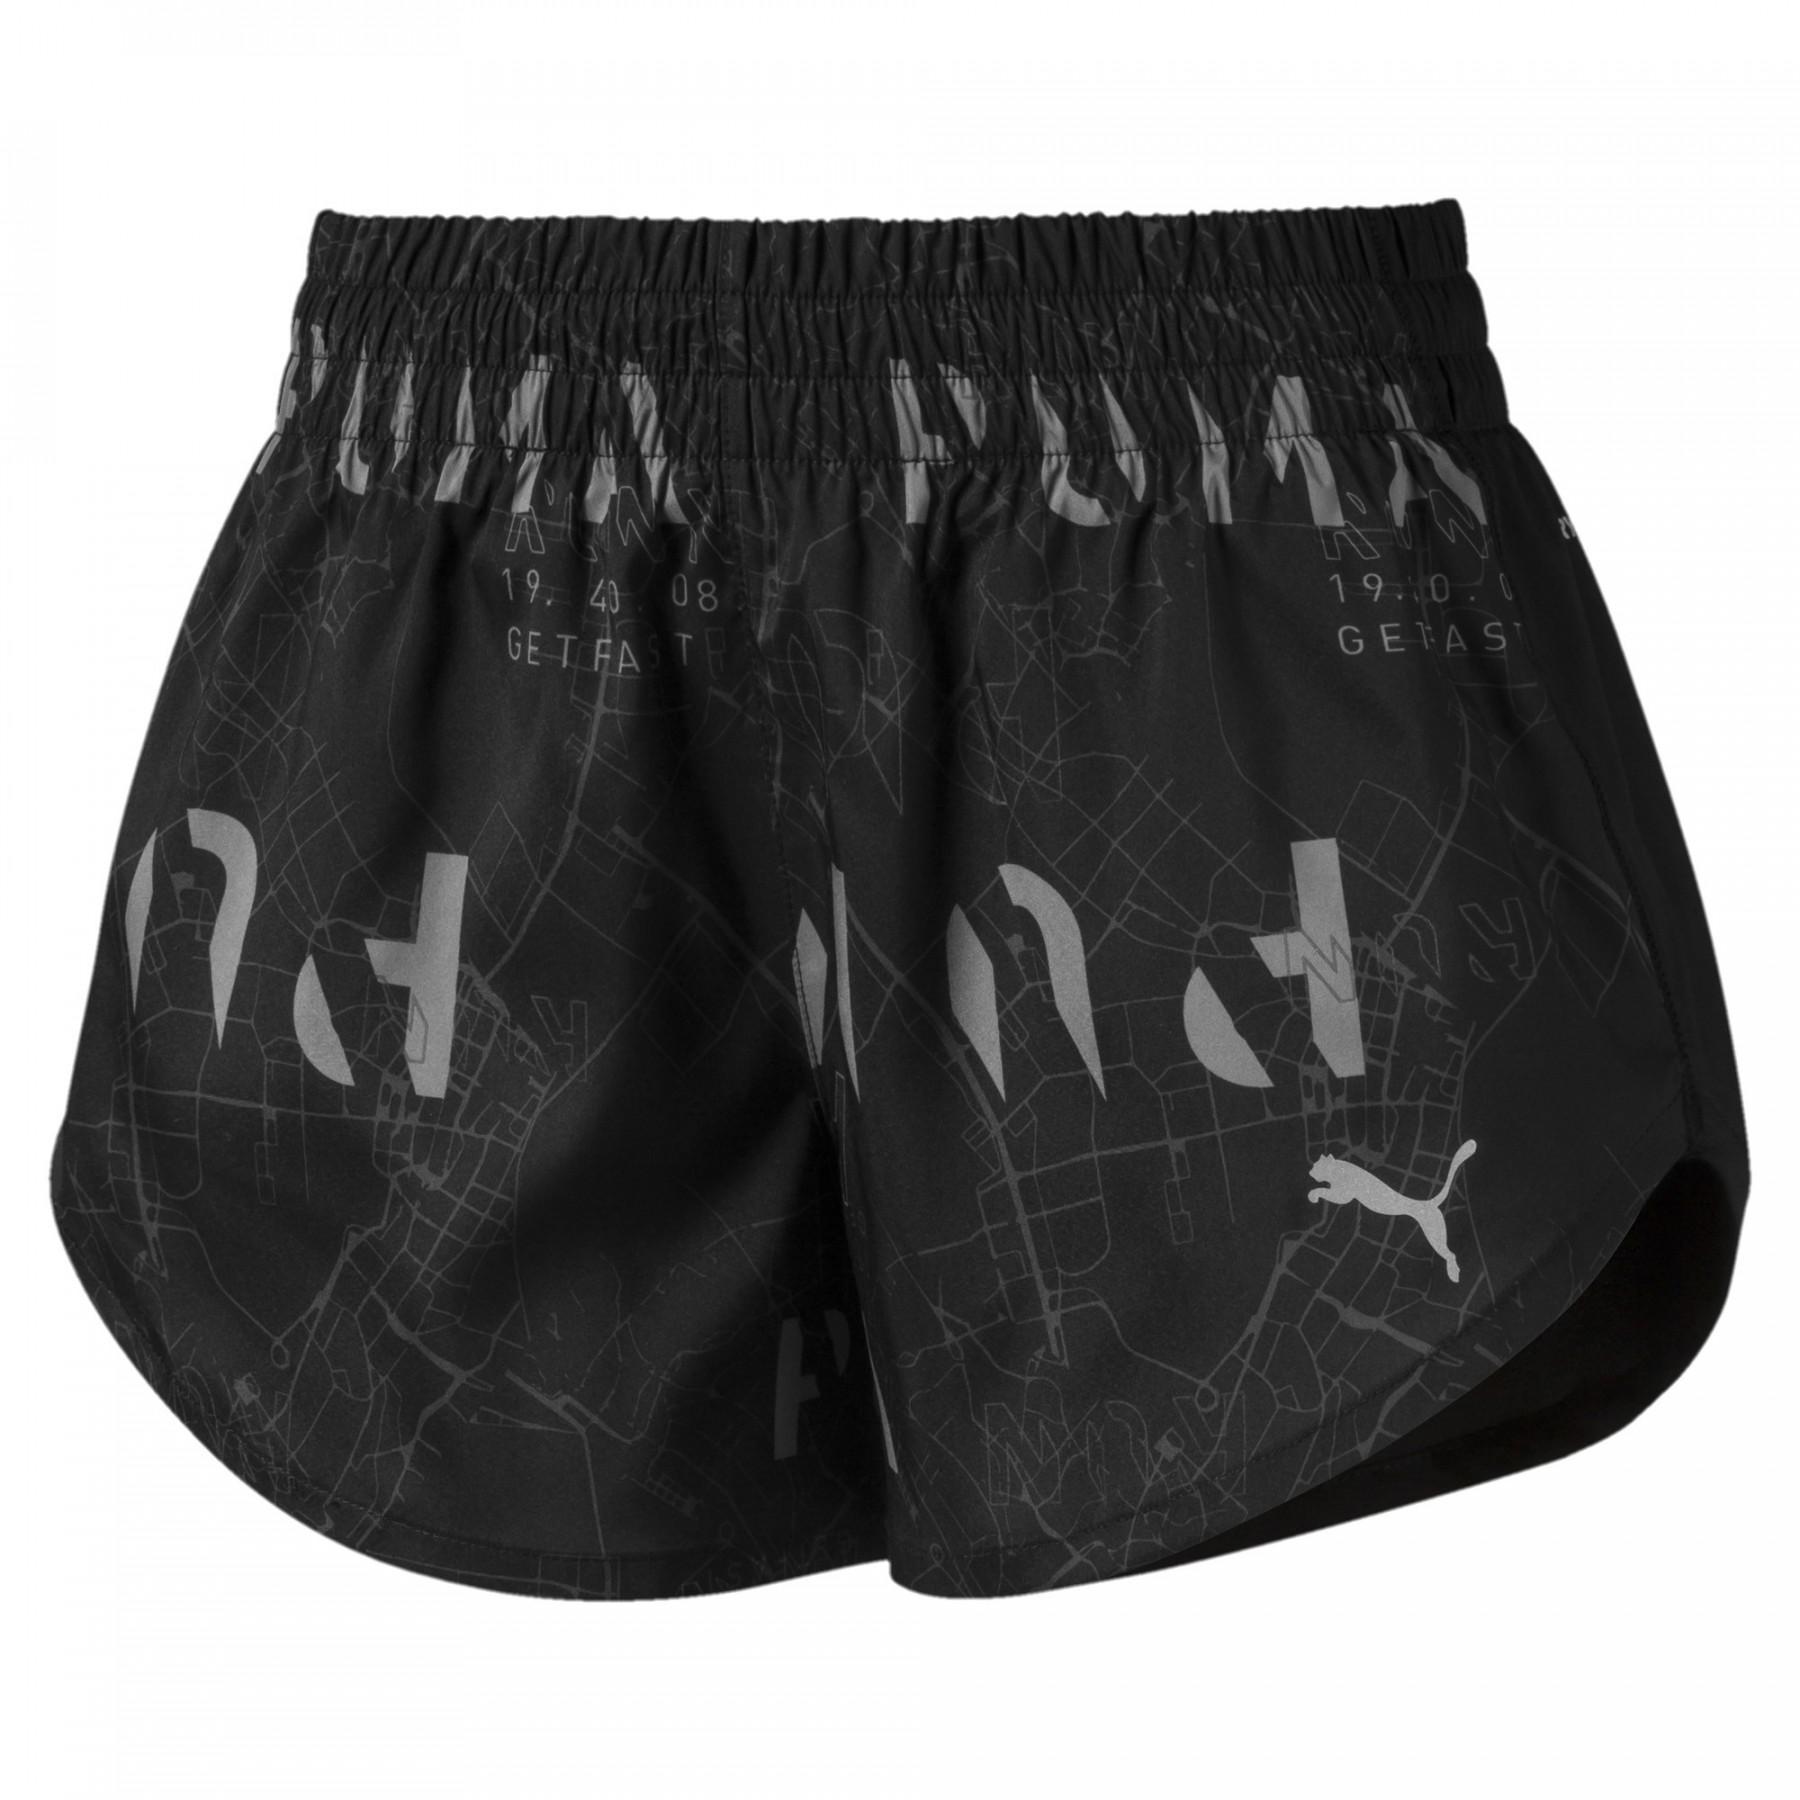 Pantalones cortos de mujer Puma Graphic